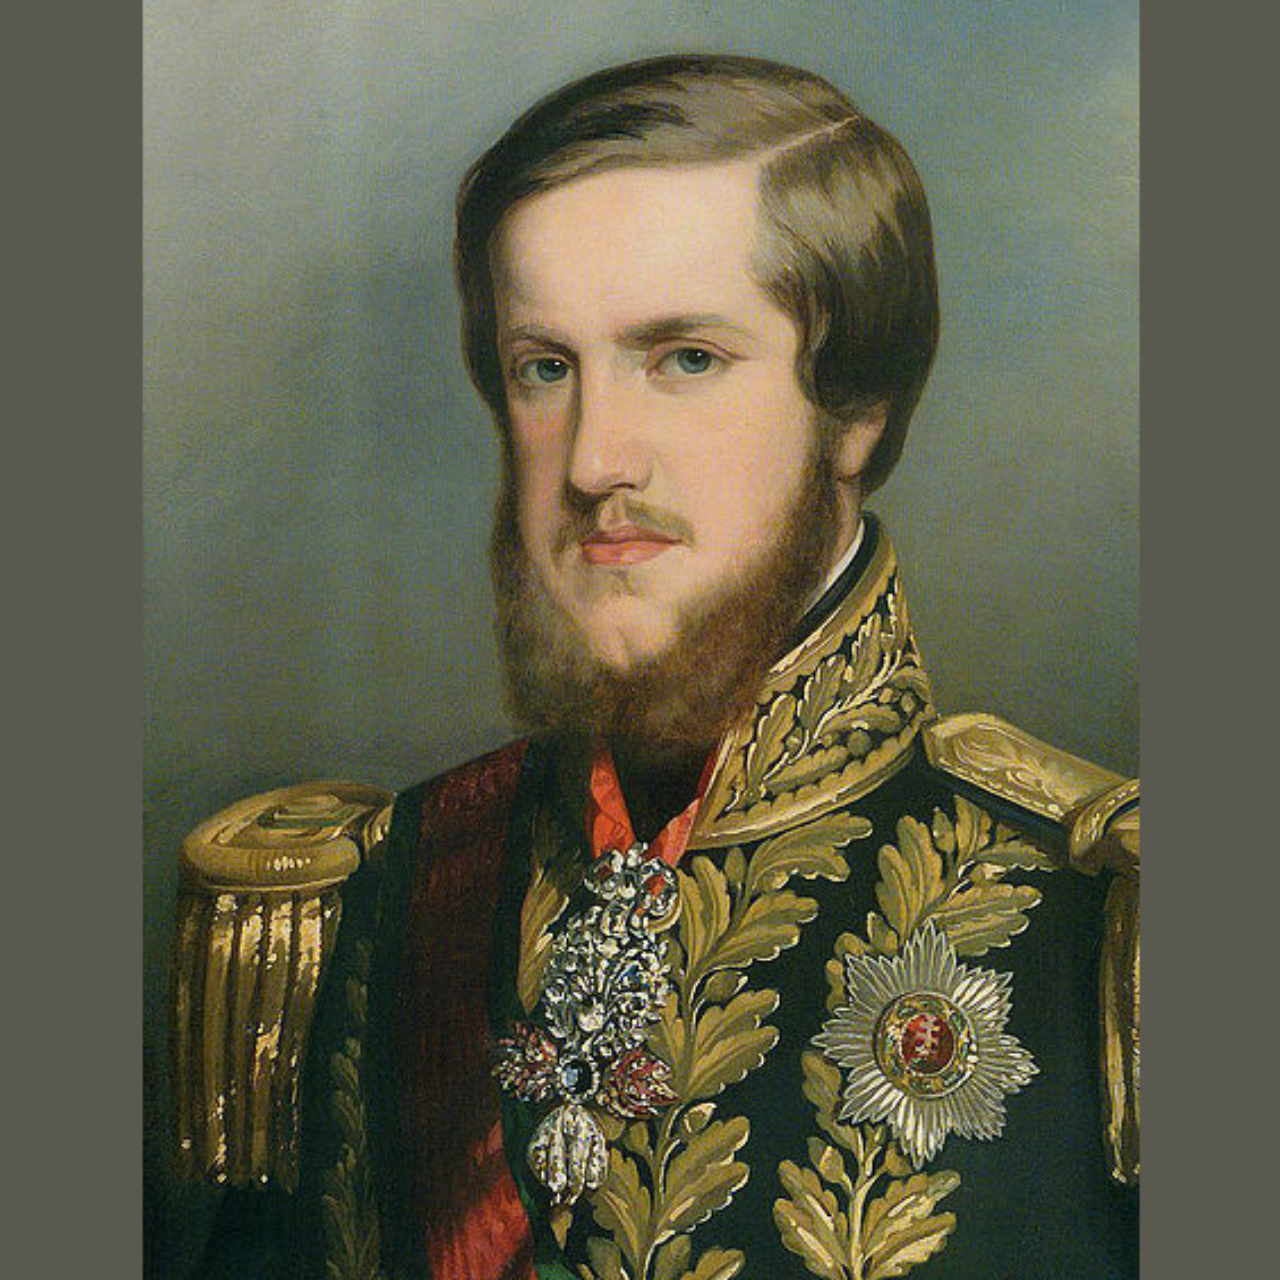 Retrato de Dom Pedro II, filho do primeiro imperador do Brasil